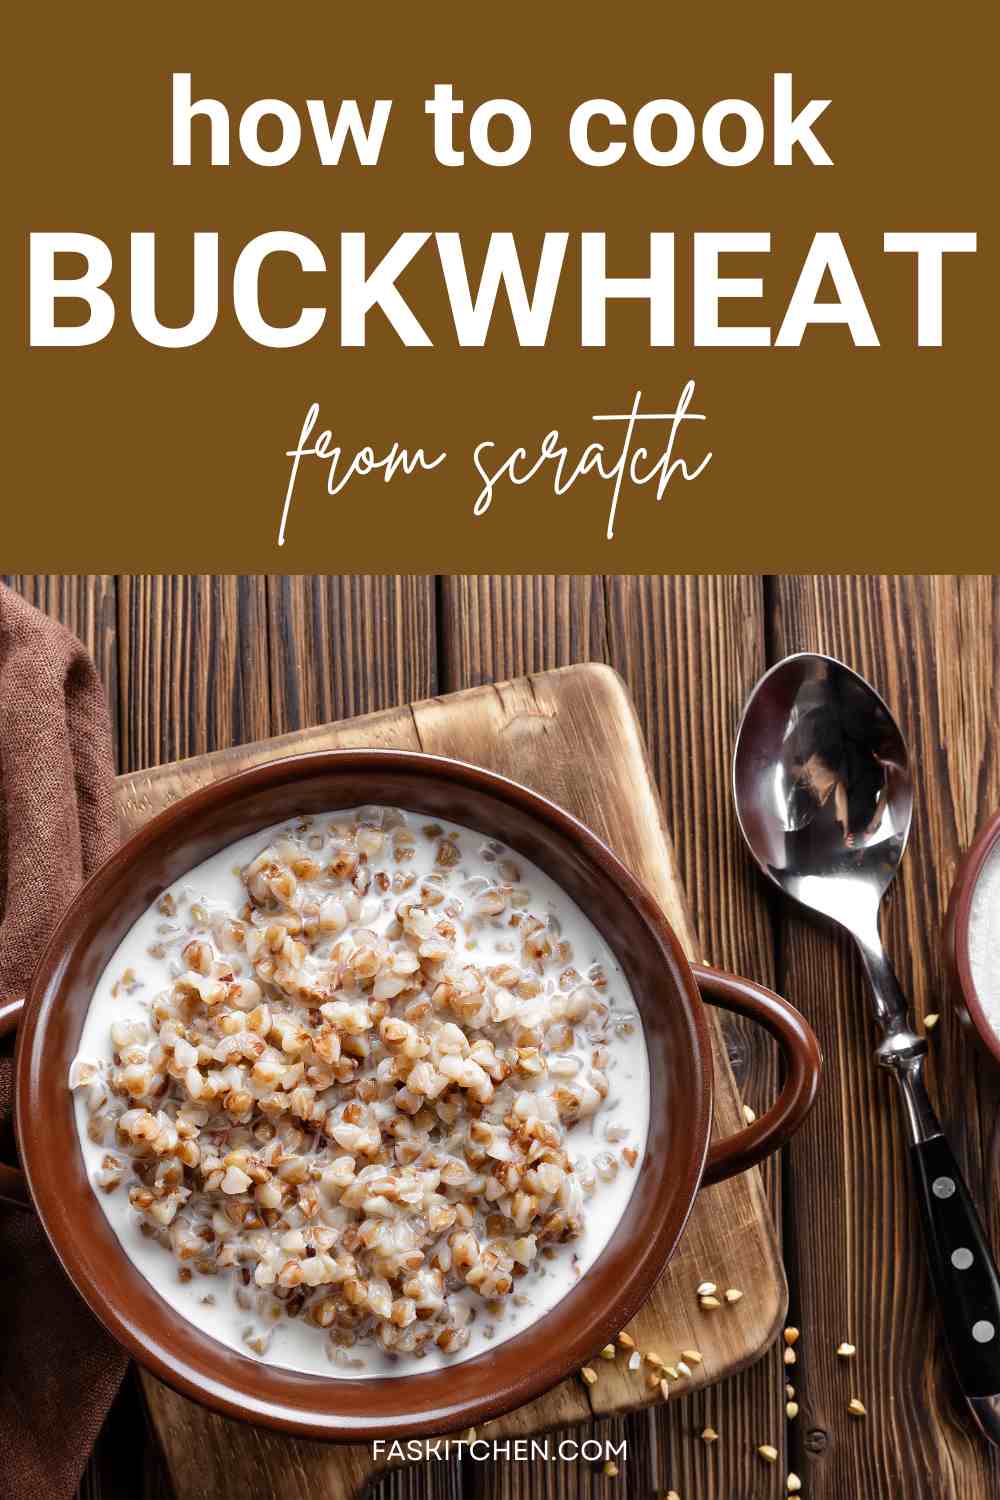 Buckwheat cooking 